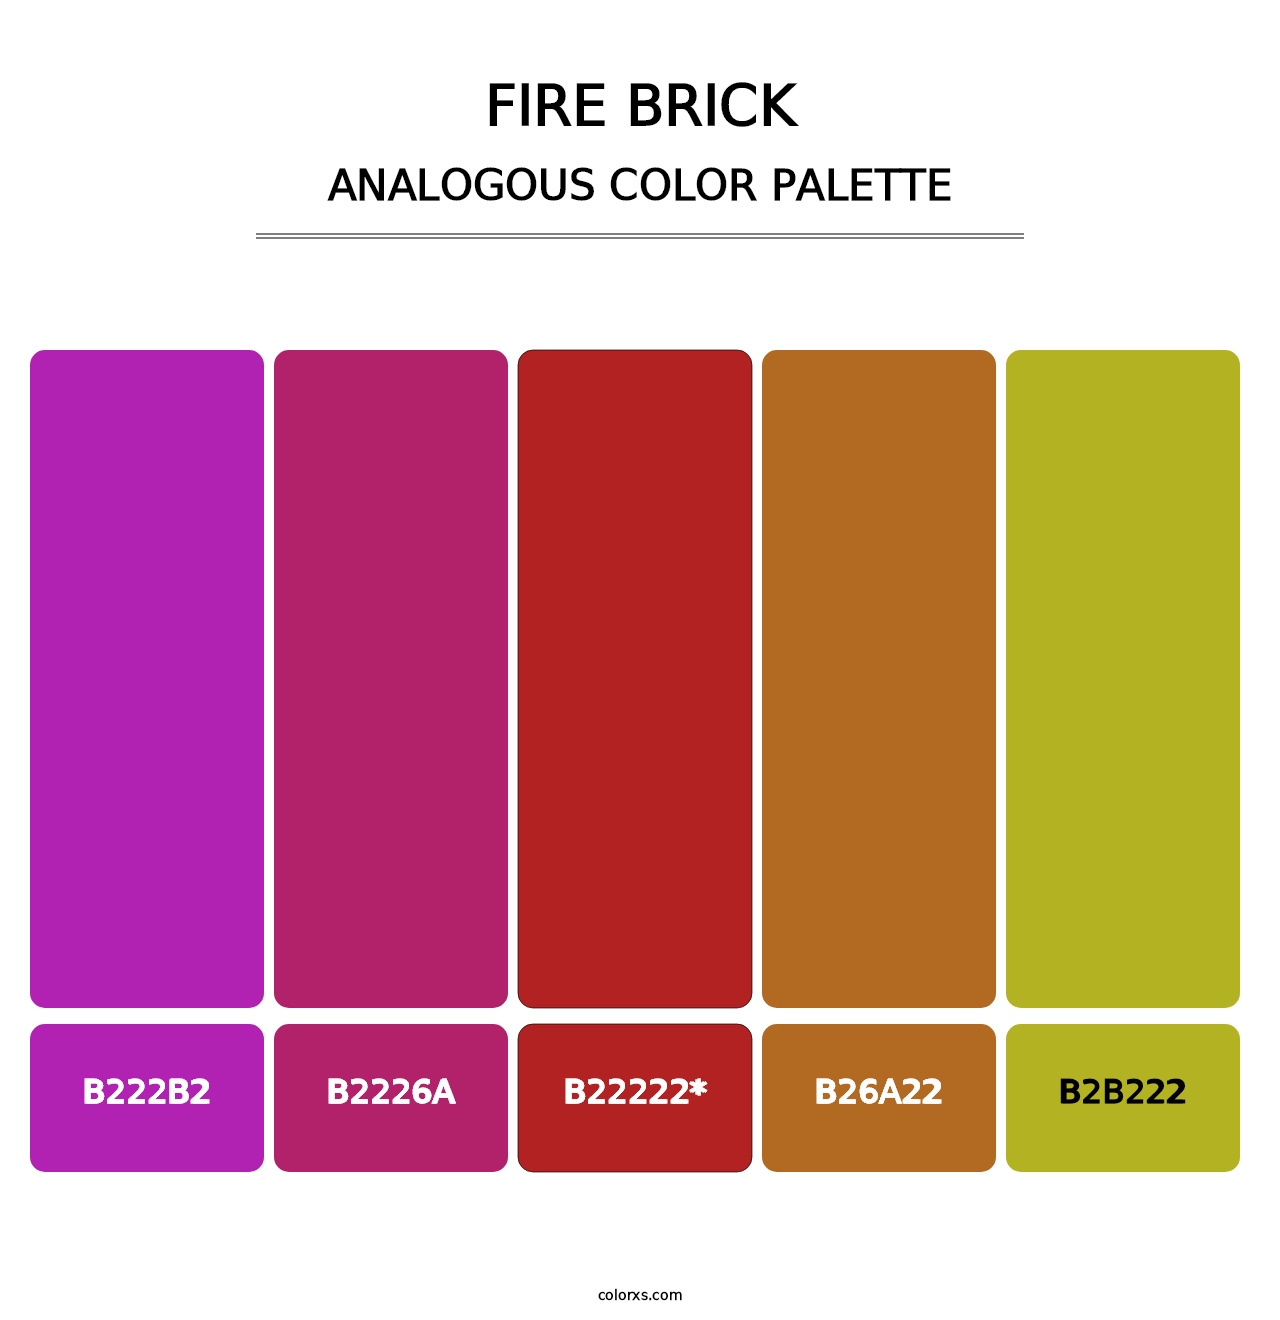 Fire Brick - Analogous Color Palette